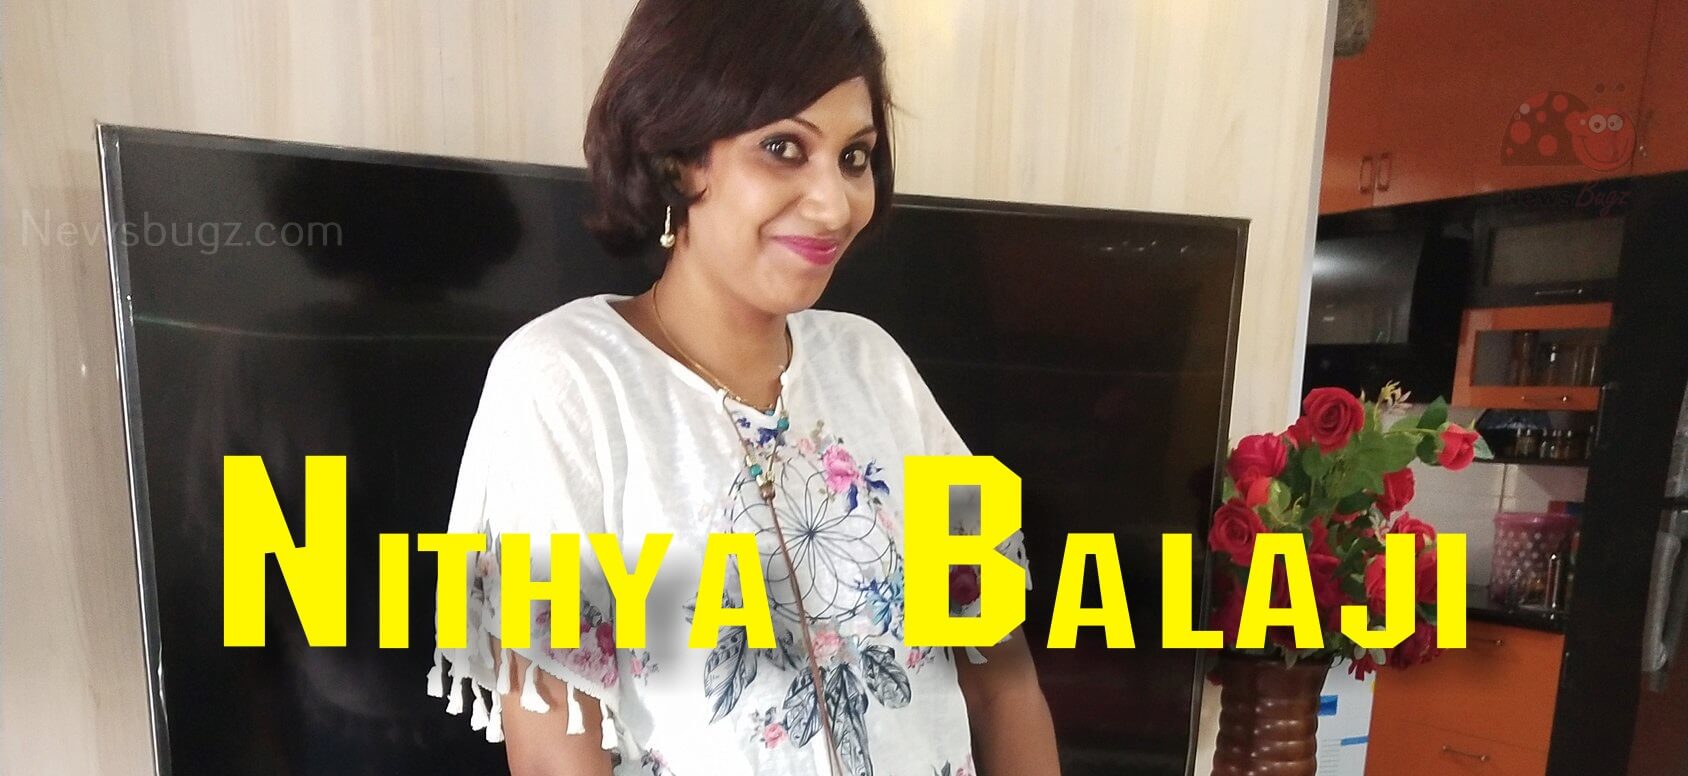 Thadi Balaji Wife Nithya